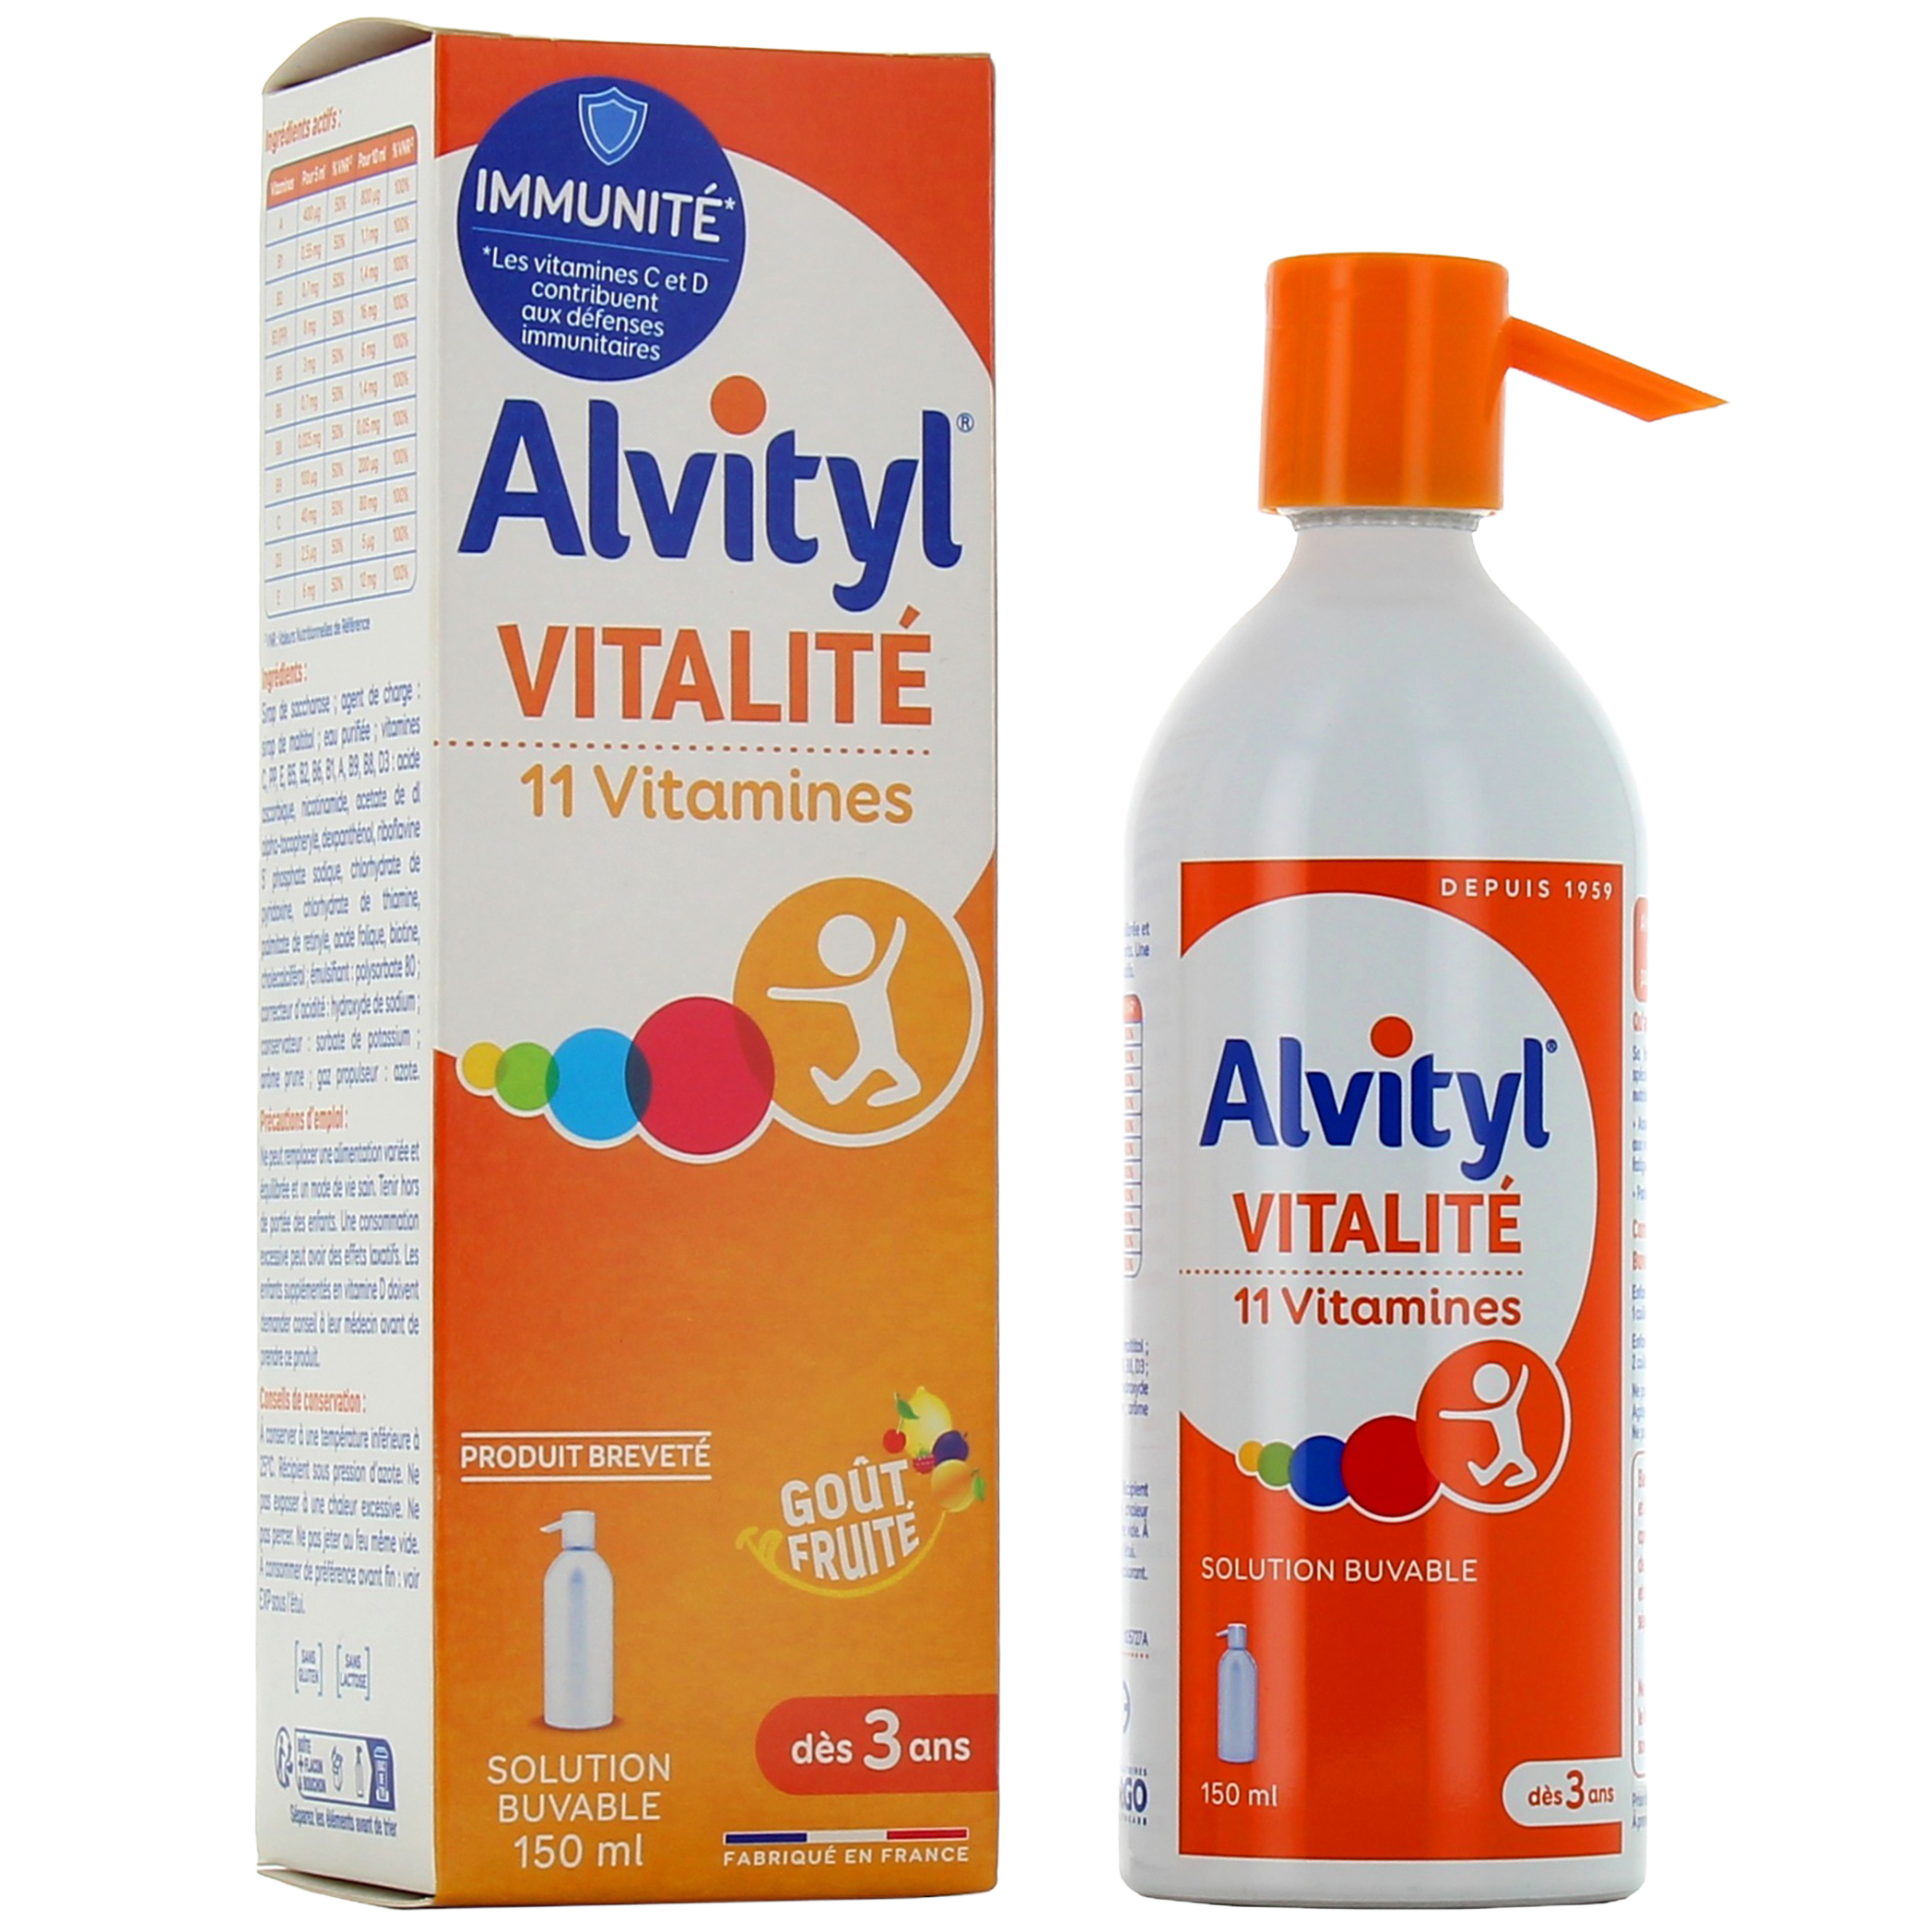 Alvityl Vitalité 30 comprimés à croquer est un complément alimentaire qui  apporte forme et vitalité.